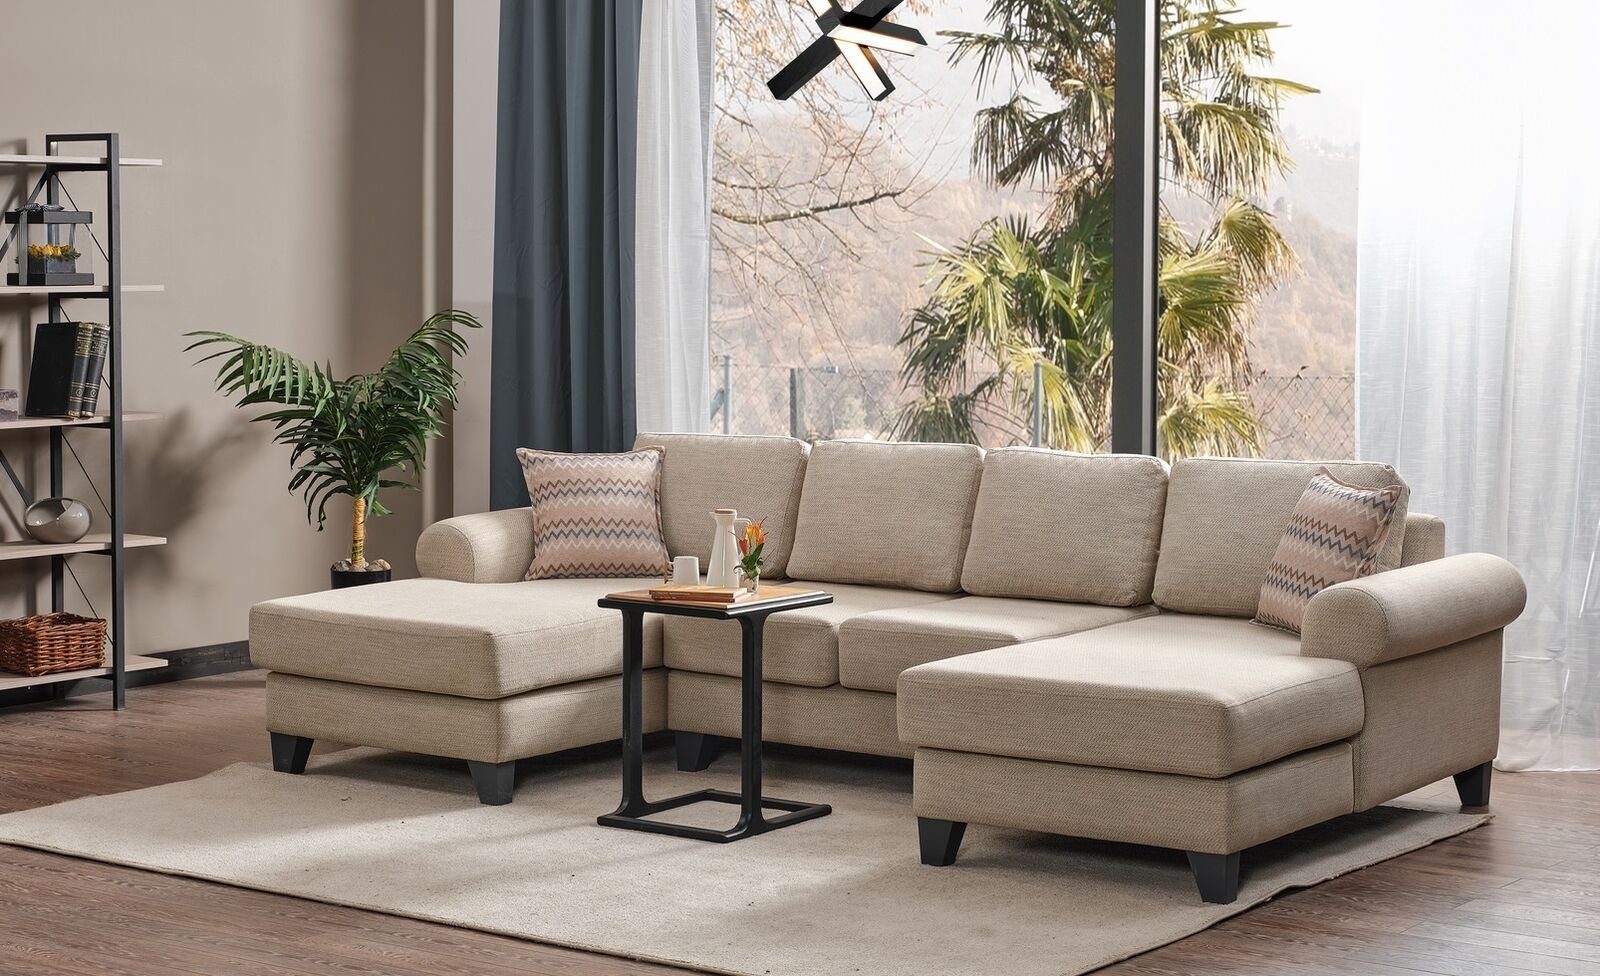 JVmoebel Ecksofa Wohnlandschaft Ecksofa U-Form Couch Sitz Polster Sofa Luxus Möbel, 1 Teile, Made in Europa